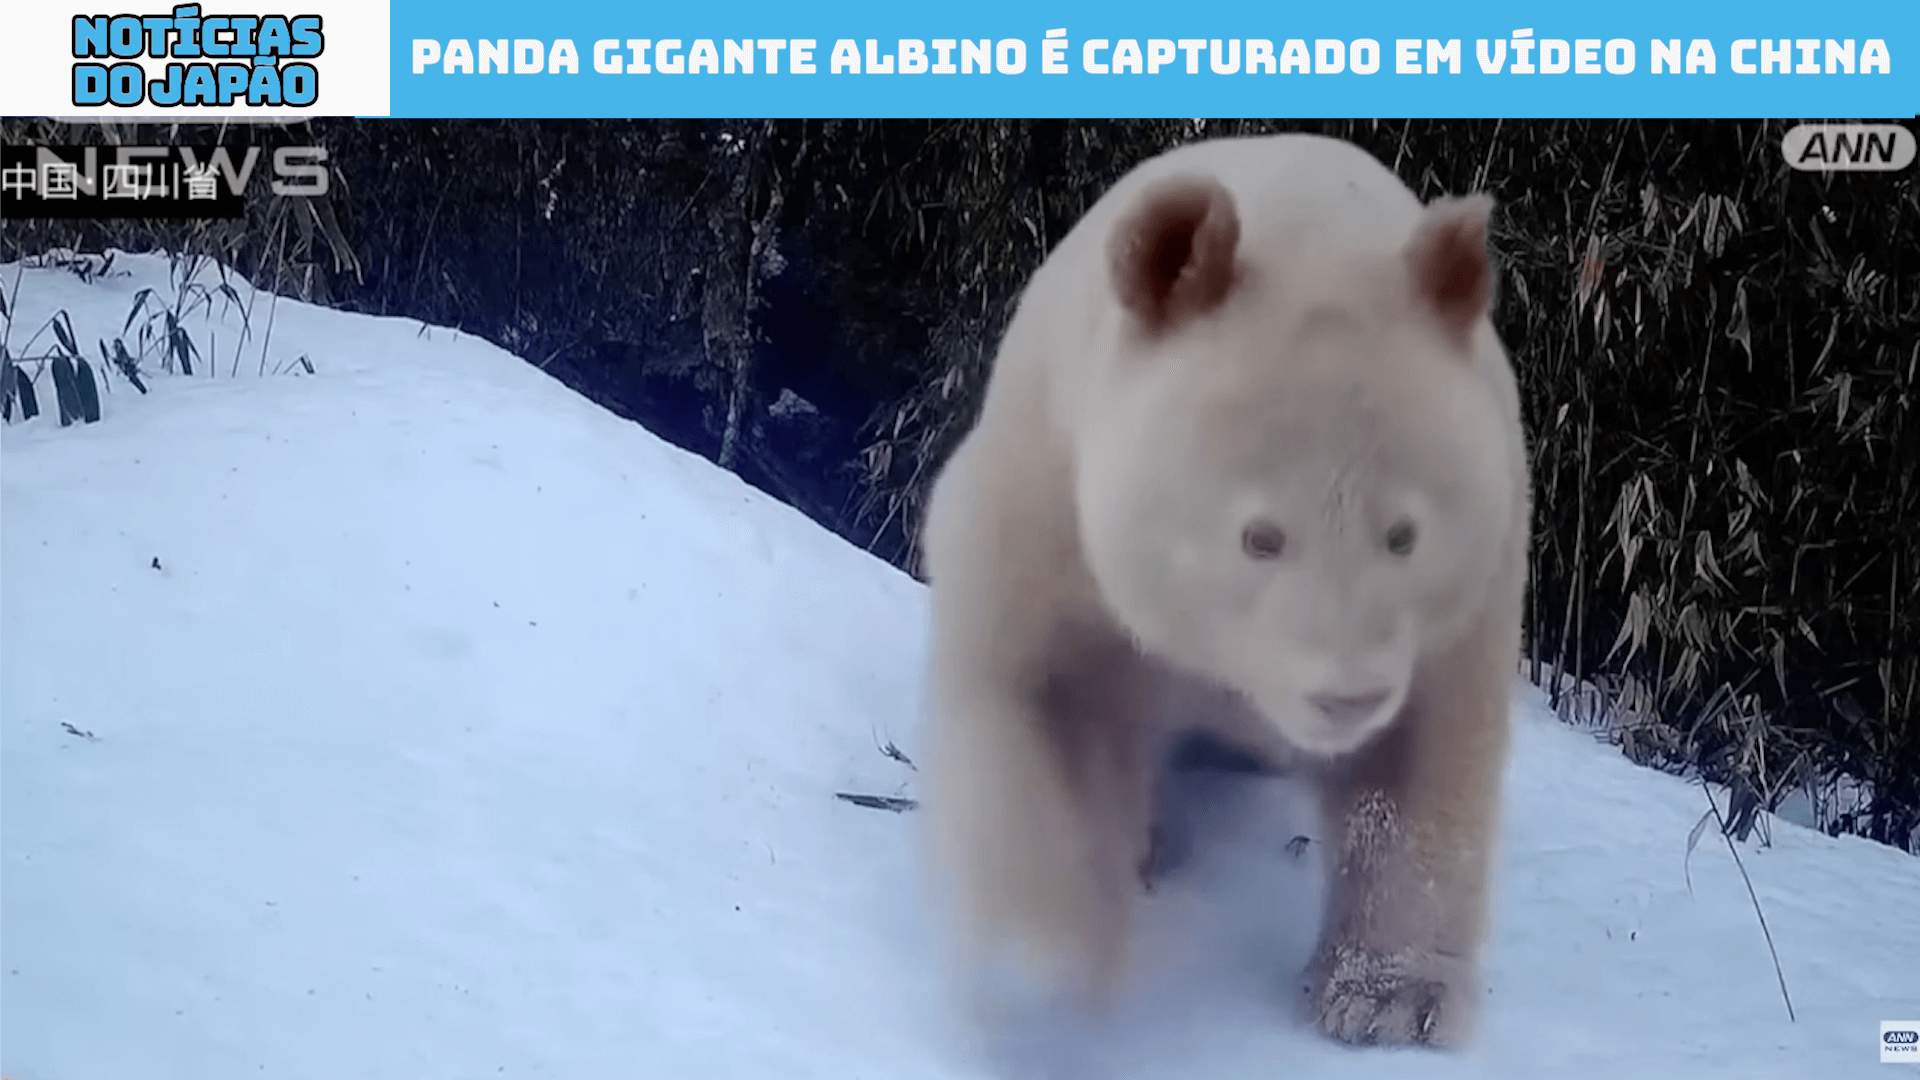 Panda Gigante albino é capturado em vídeo na China 